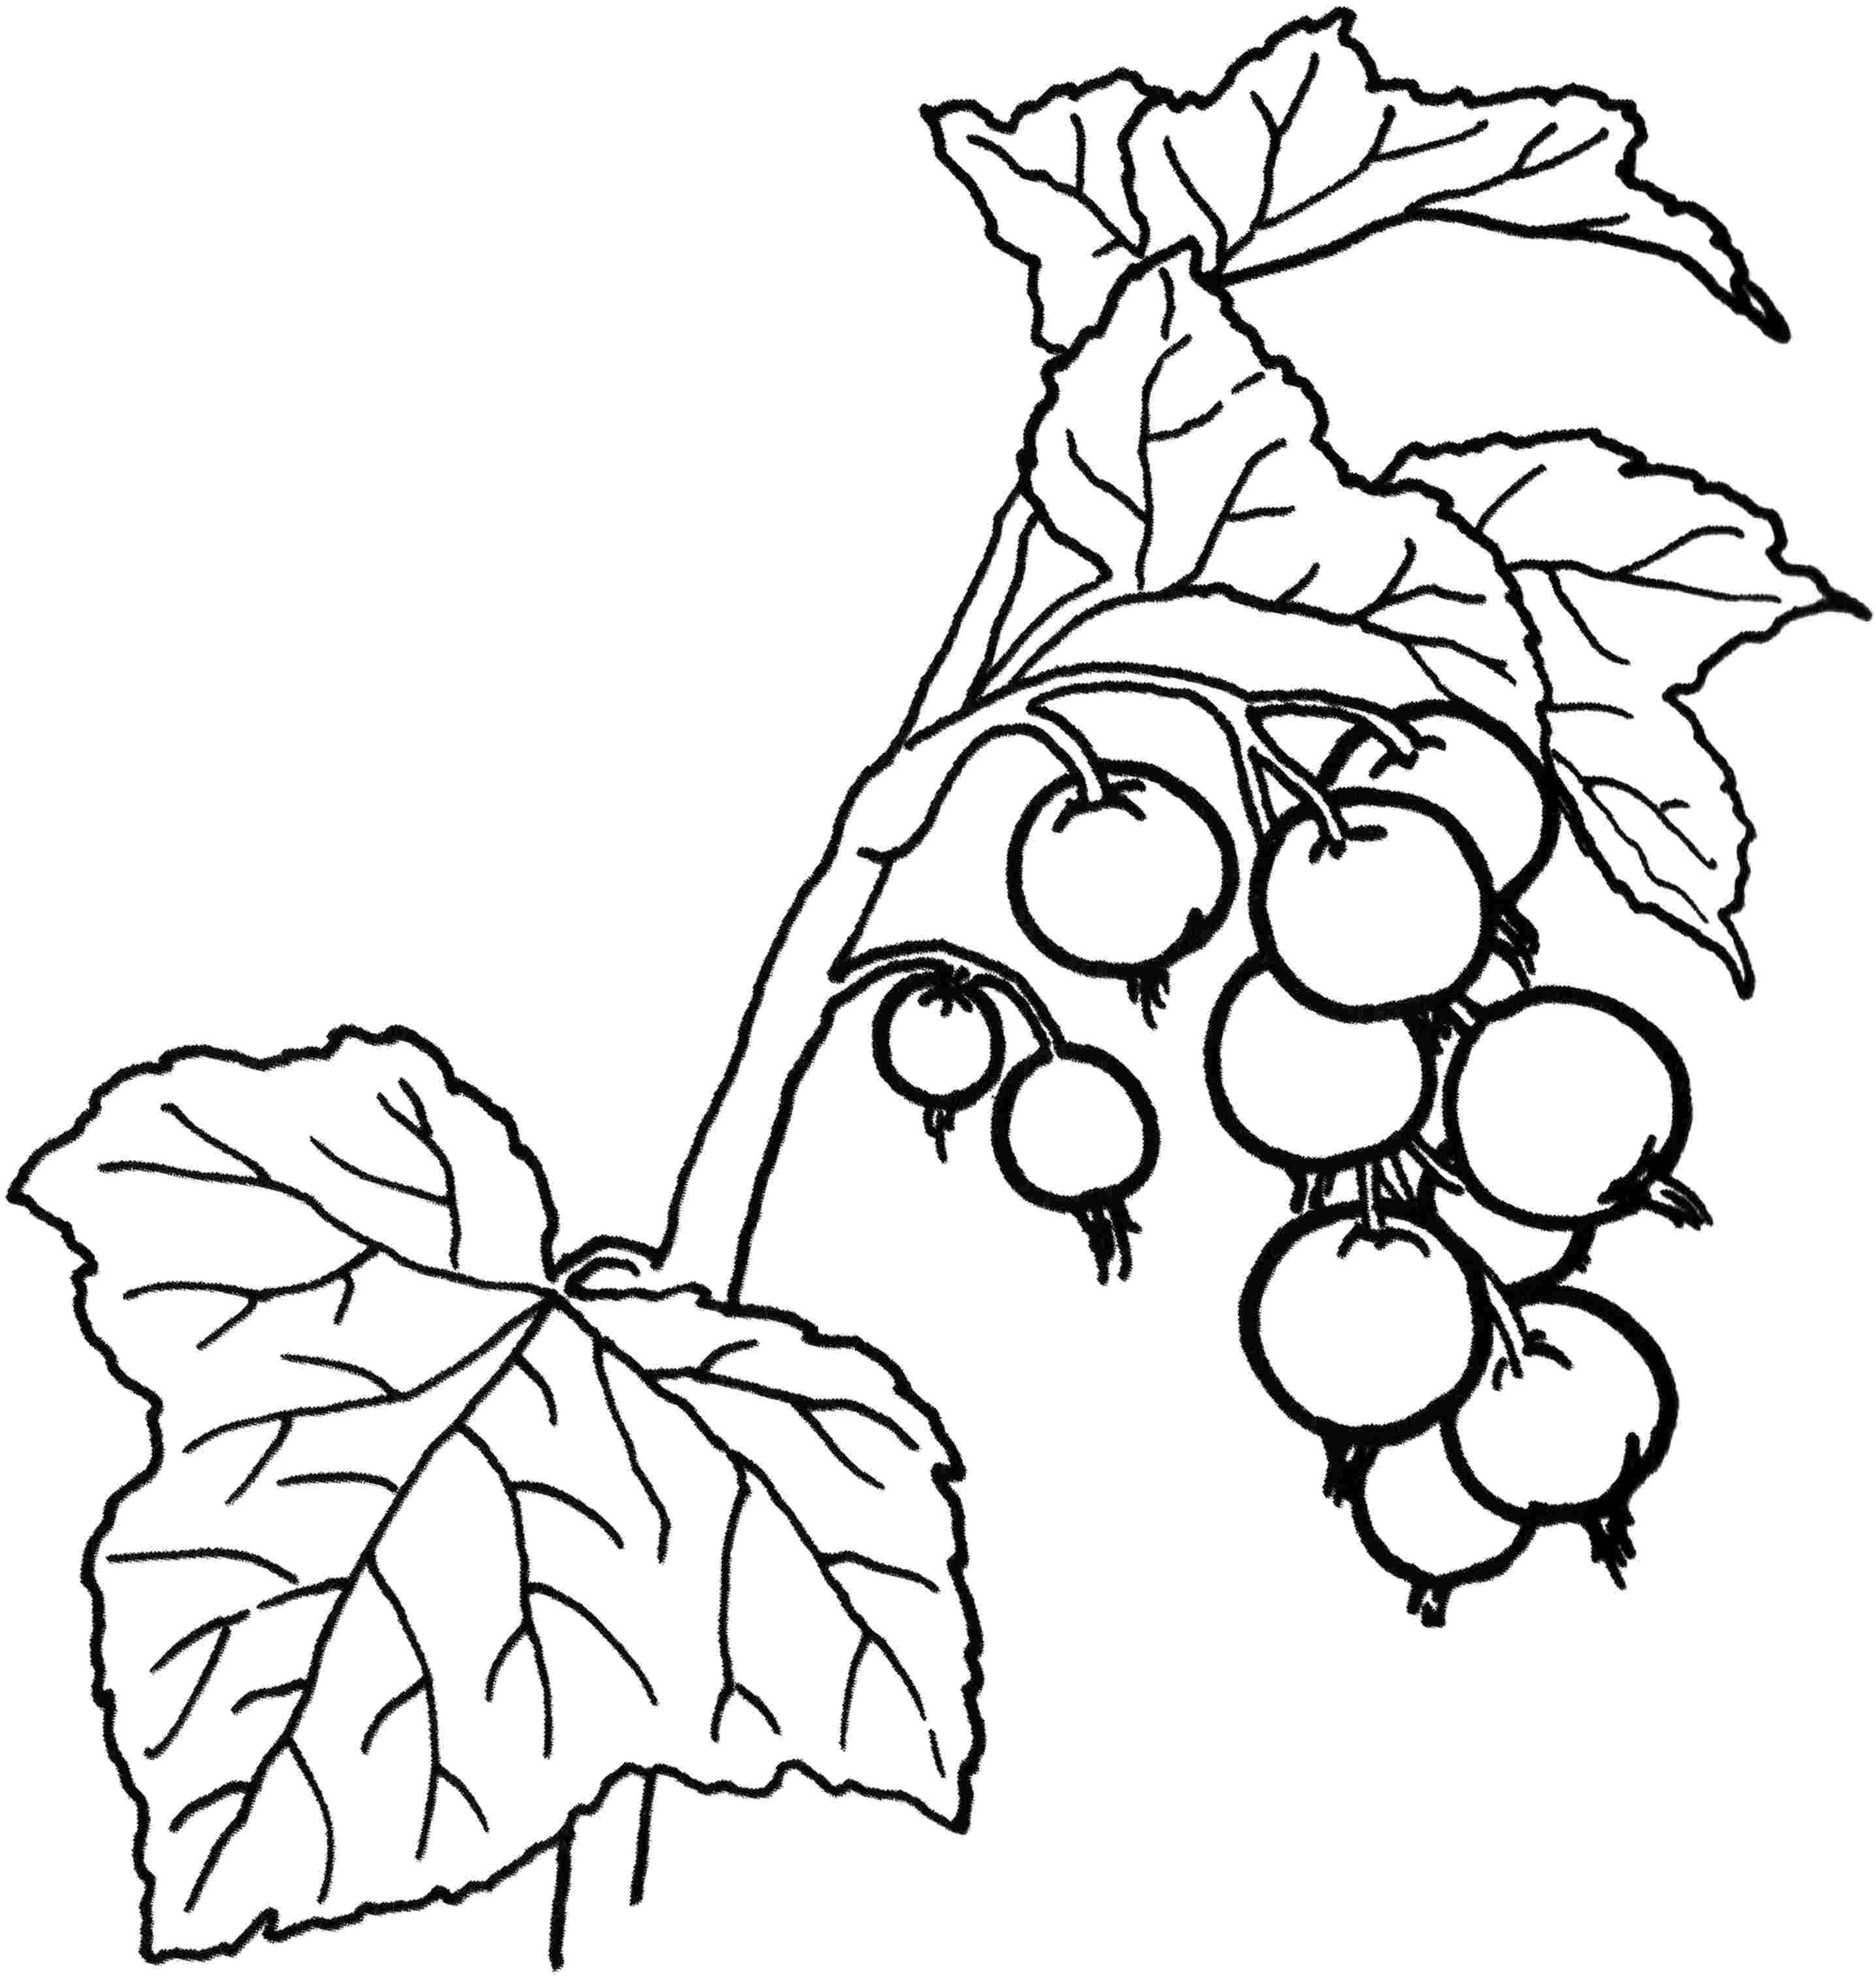 Раскраски ягоды малина вишня арбуз вишня крыжовник  Ветка смородины